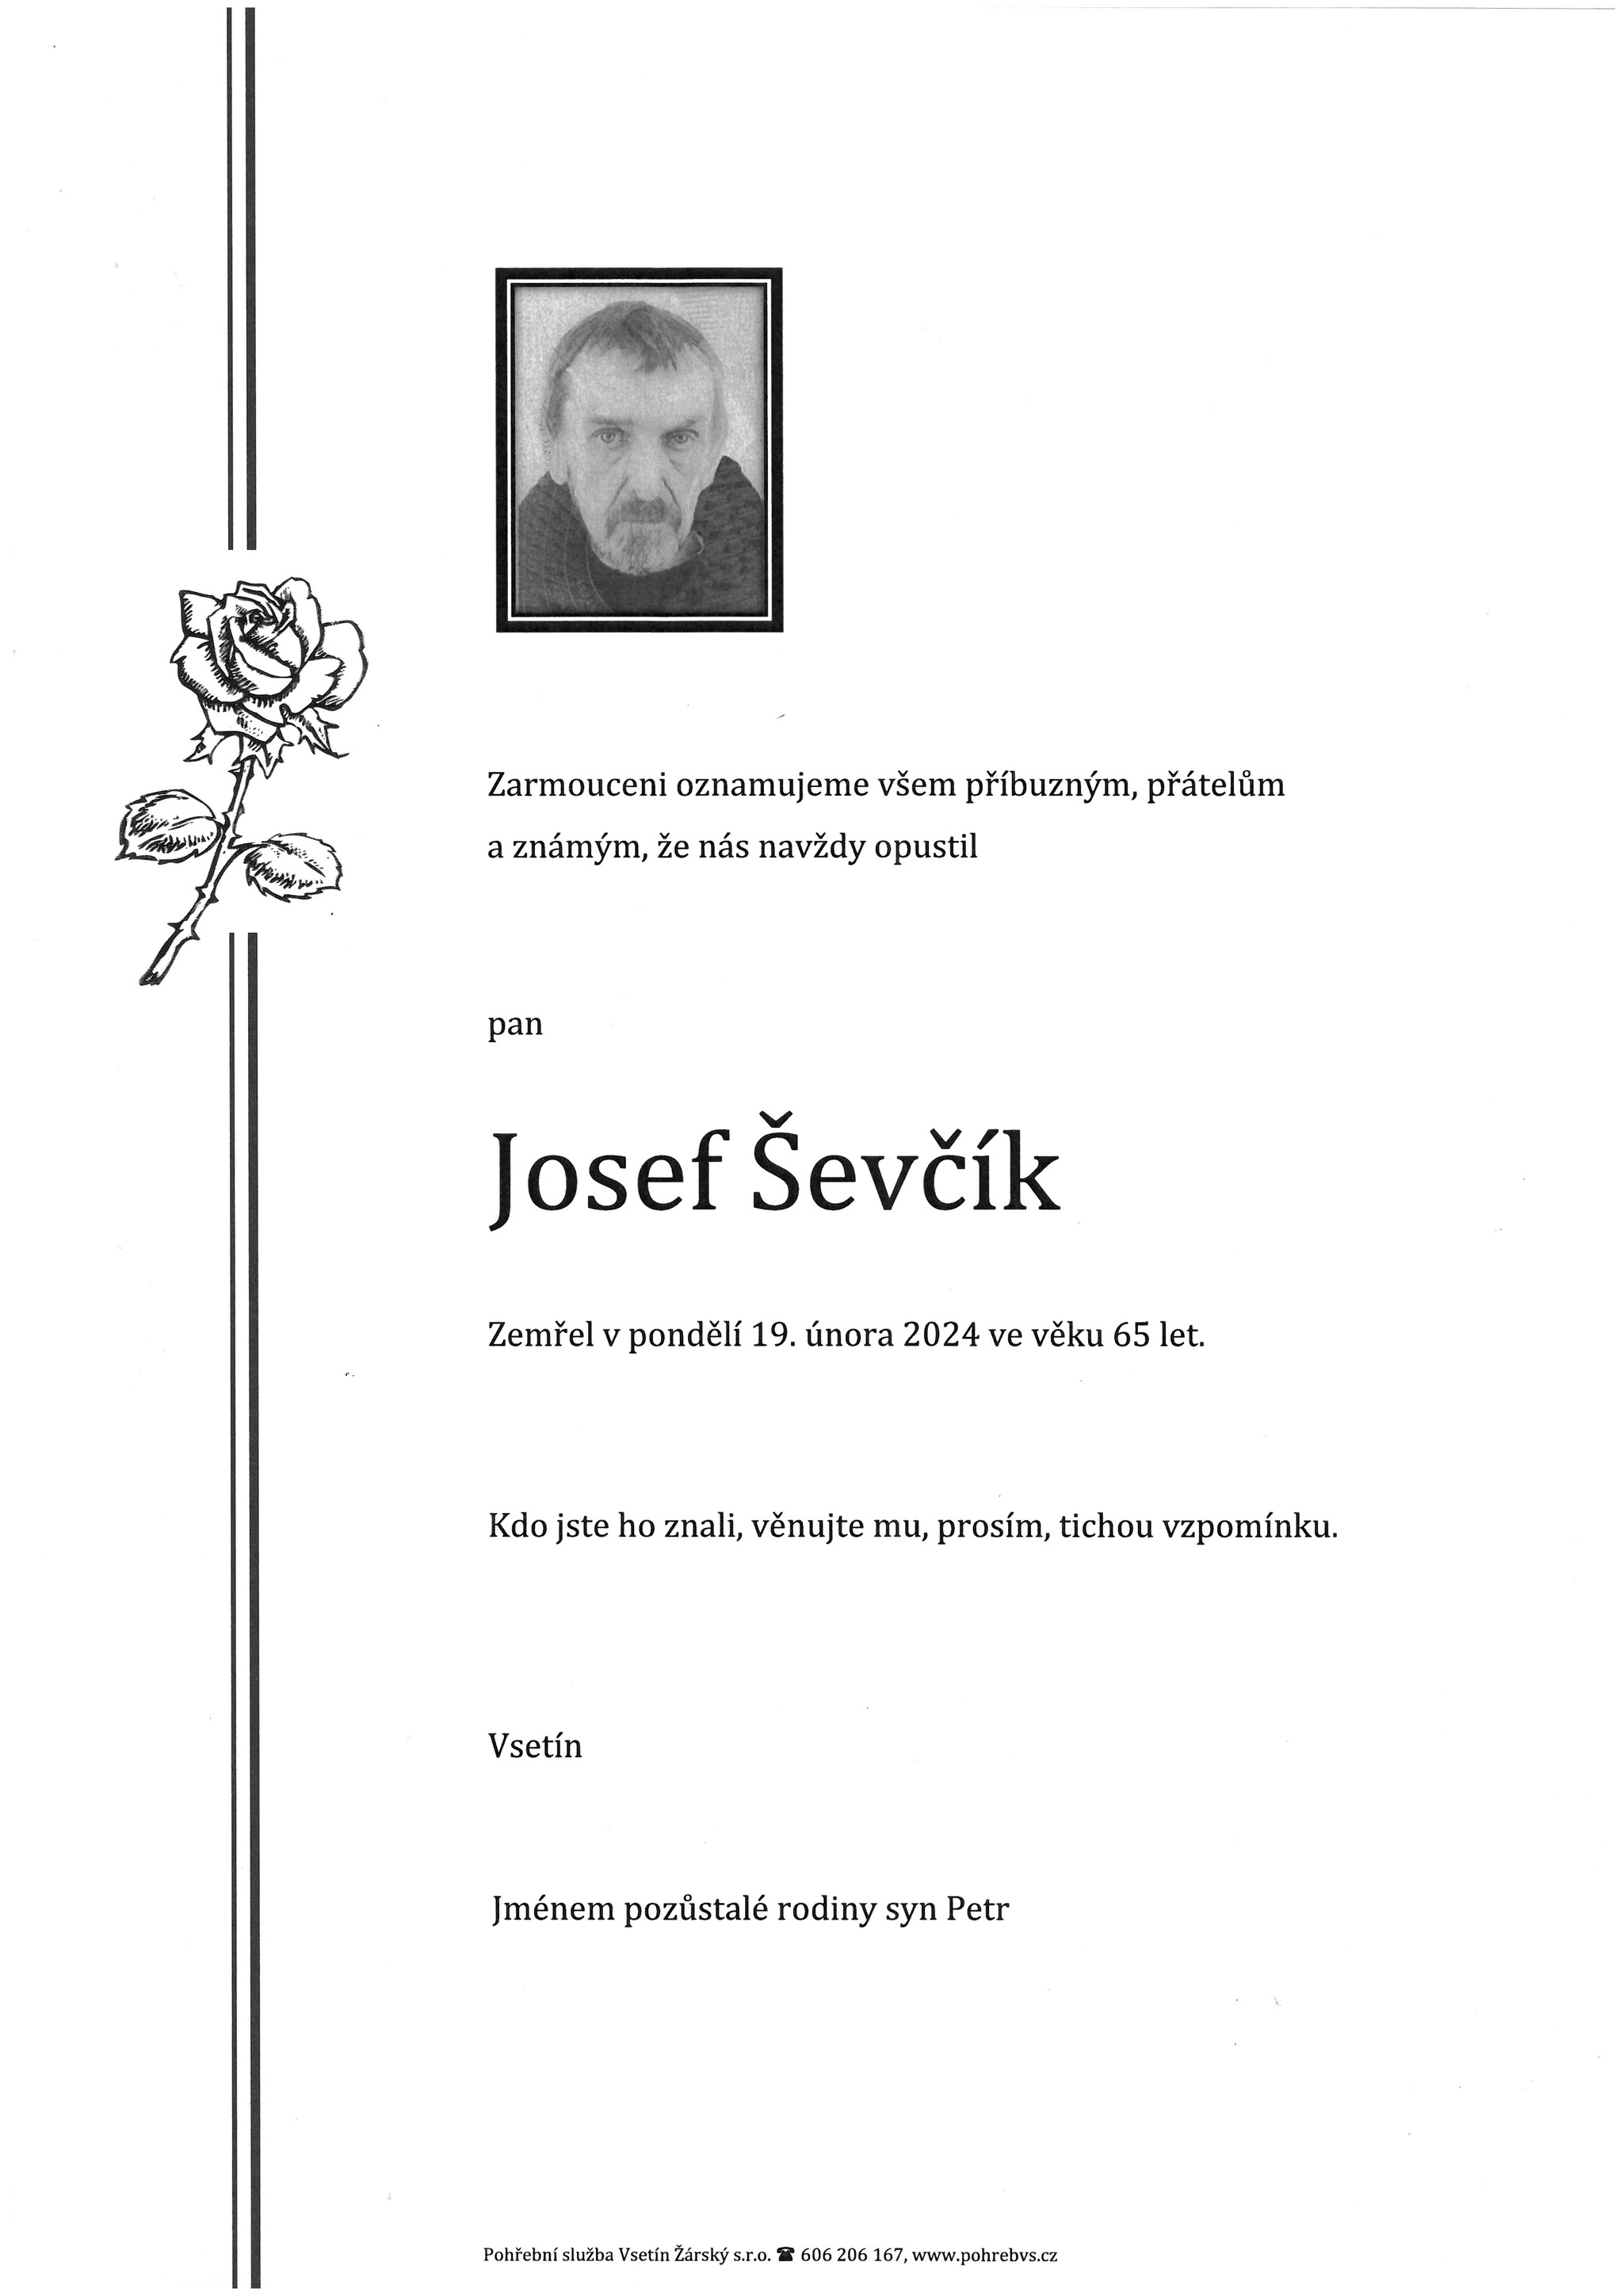 Josef Ševčík